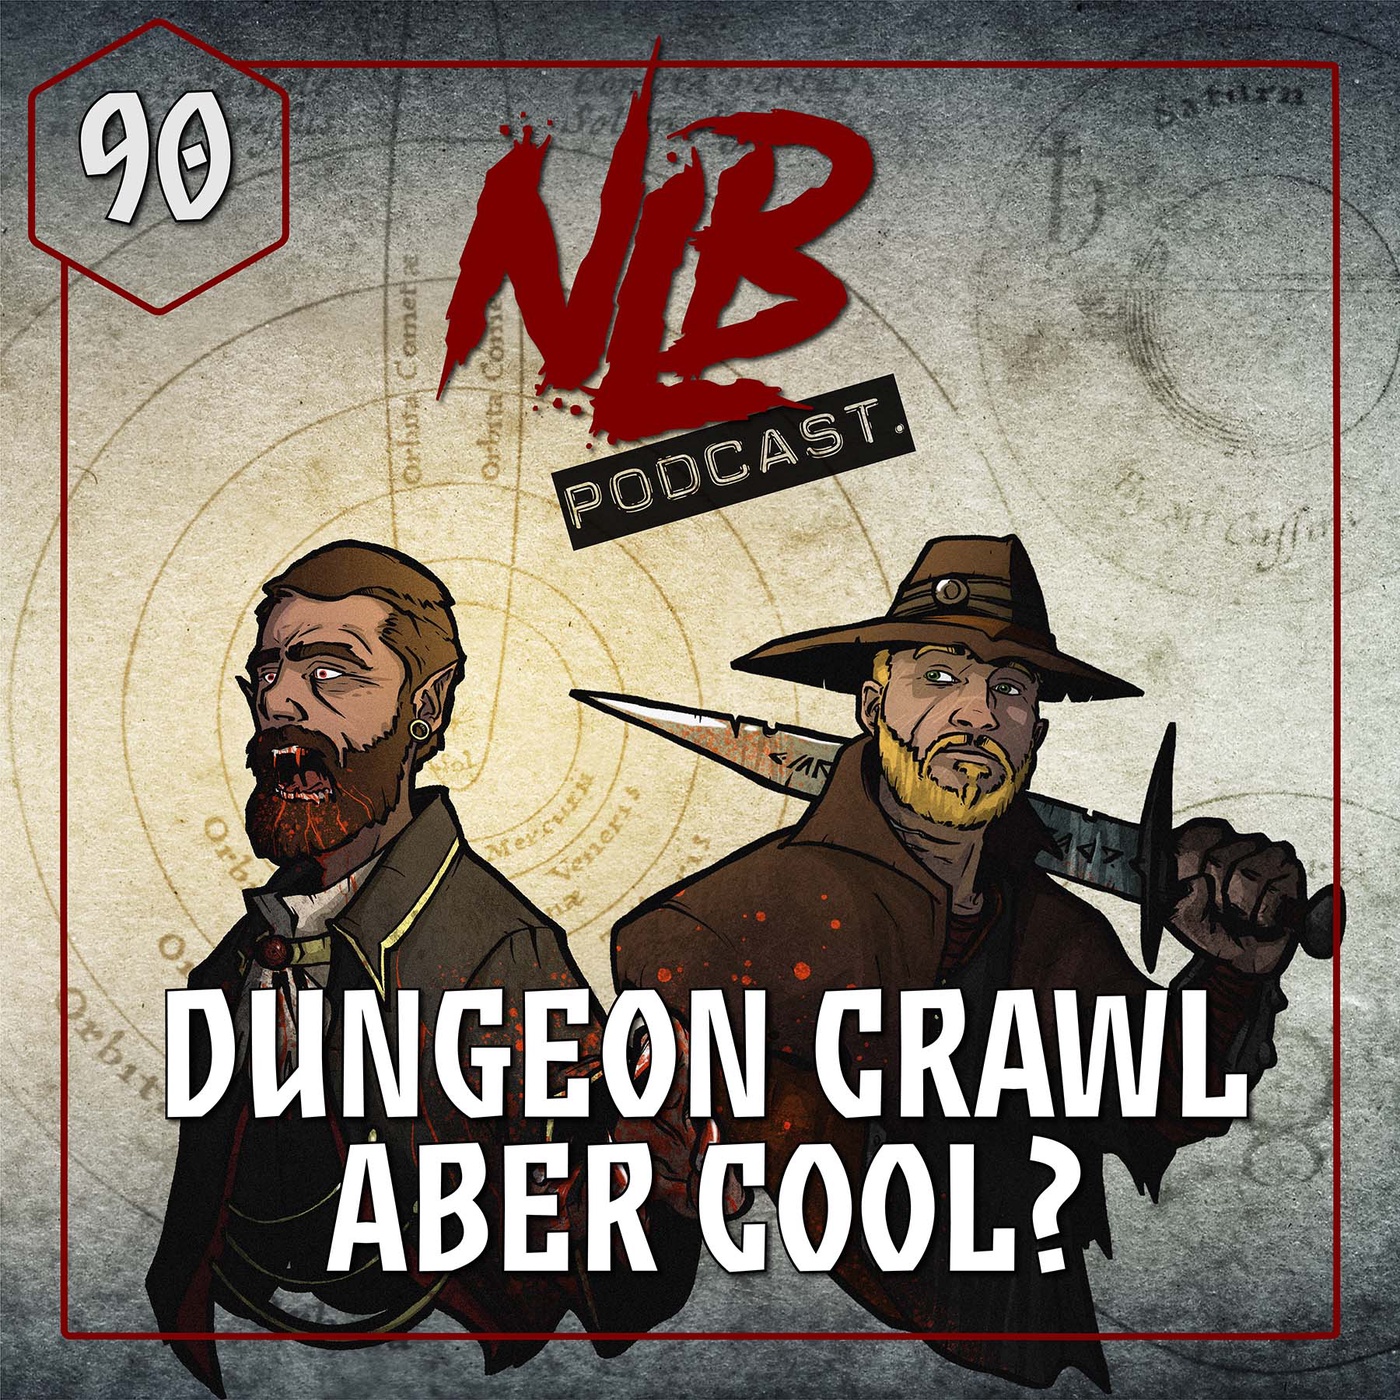 090 - Dungeon Crawl, aber cool?